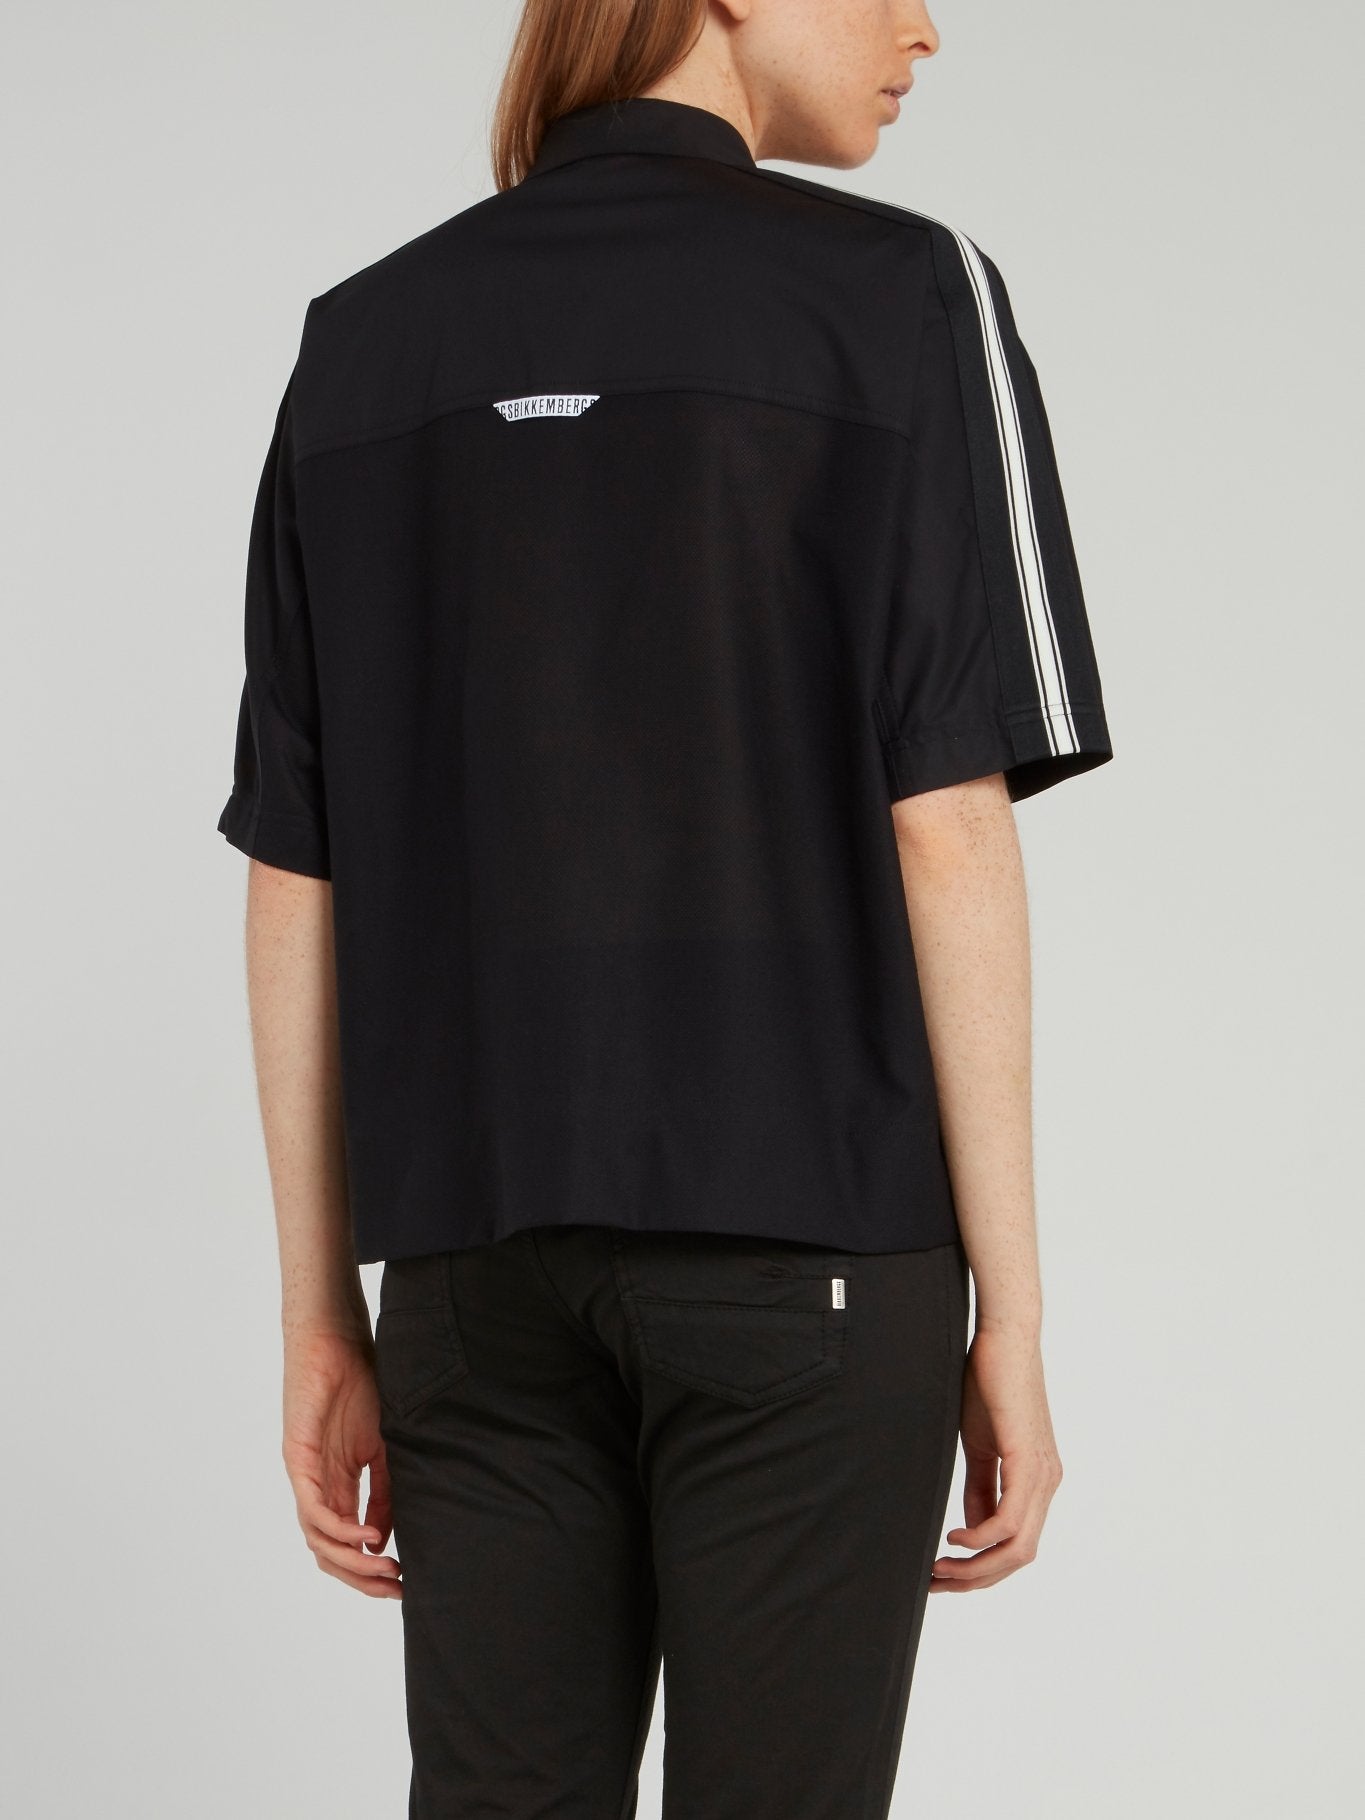 Black Shoulder Stripe Half Sleeve Shirt